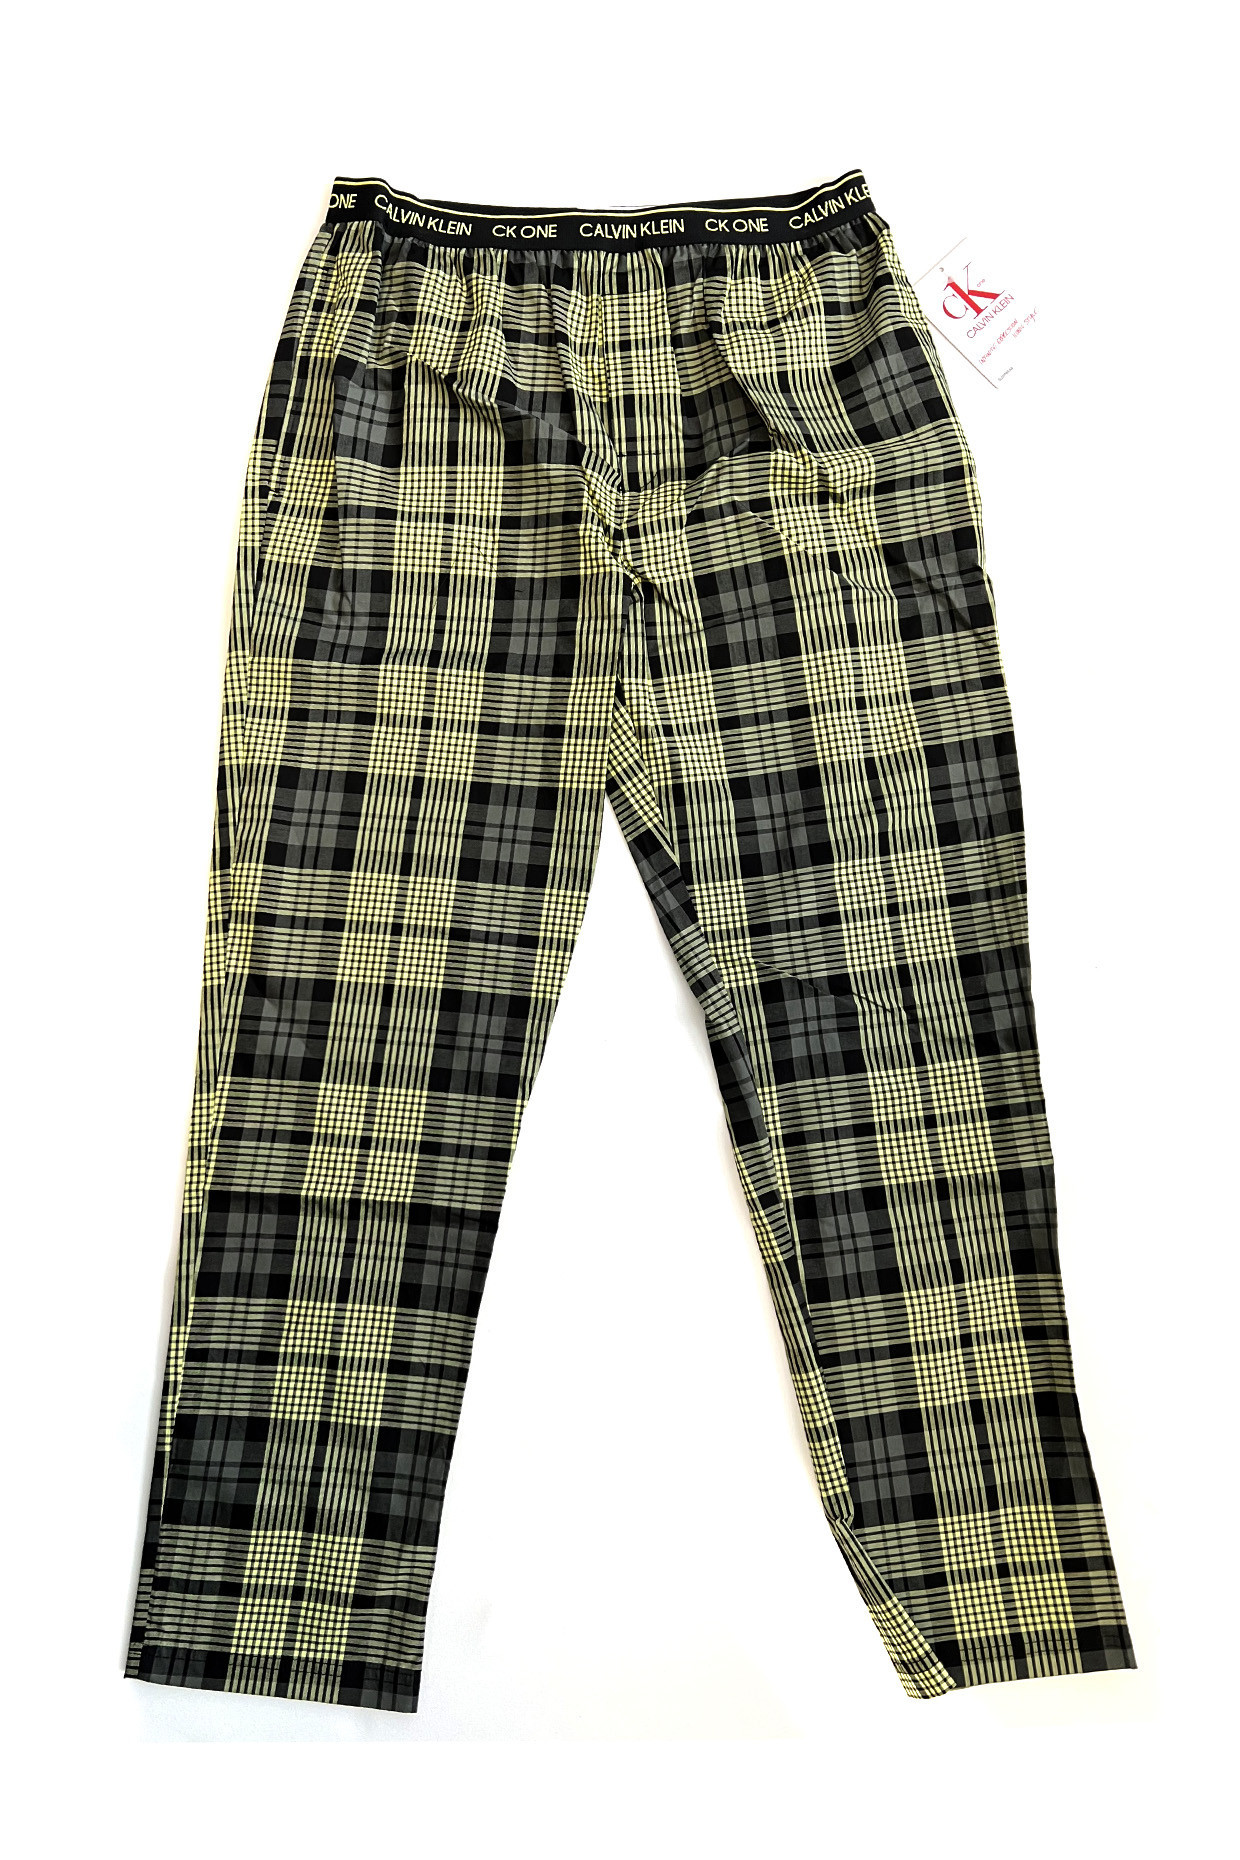 Pánské kalhoty na spaní NM1869E 1YS zeleno-černé - Calvin Klein Velikost: M, Barvy: zeleno-černá